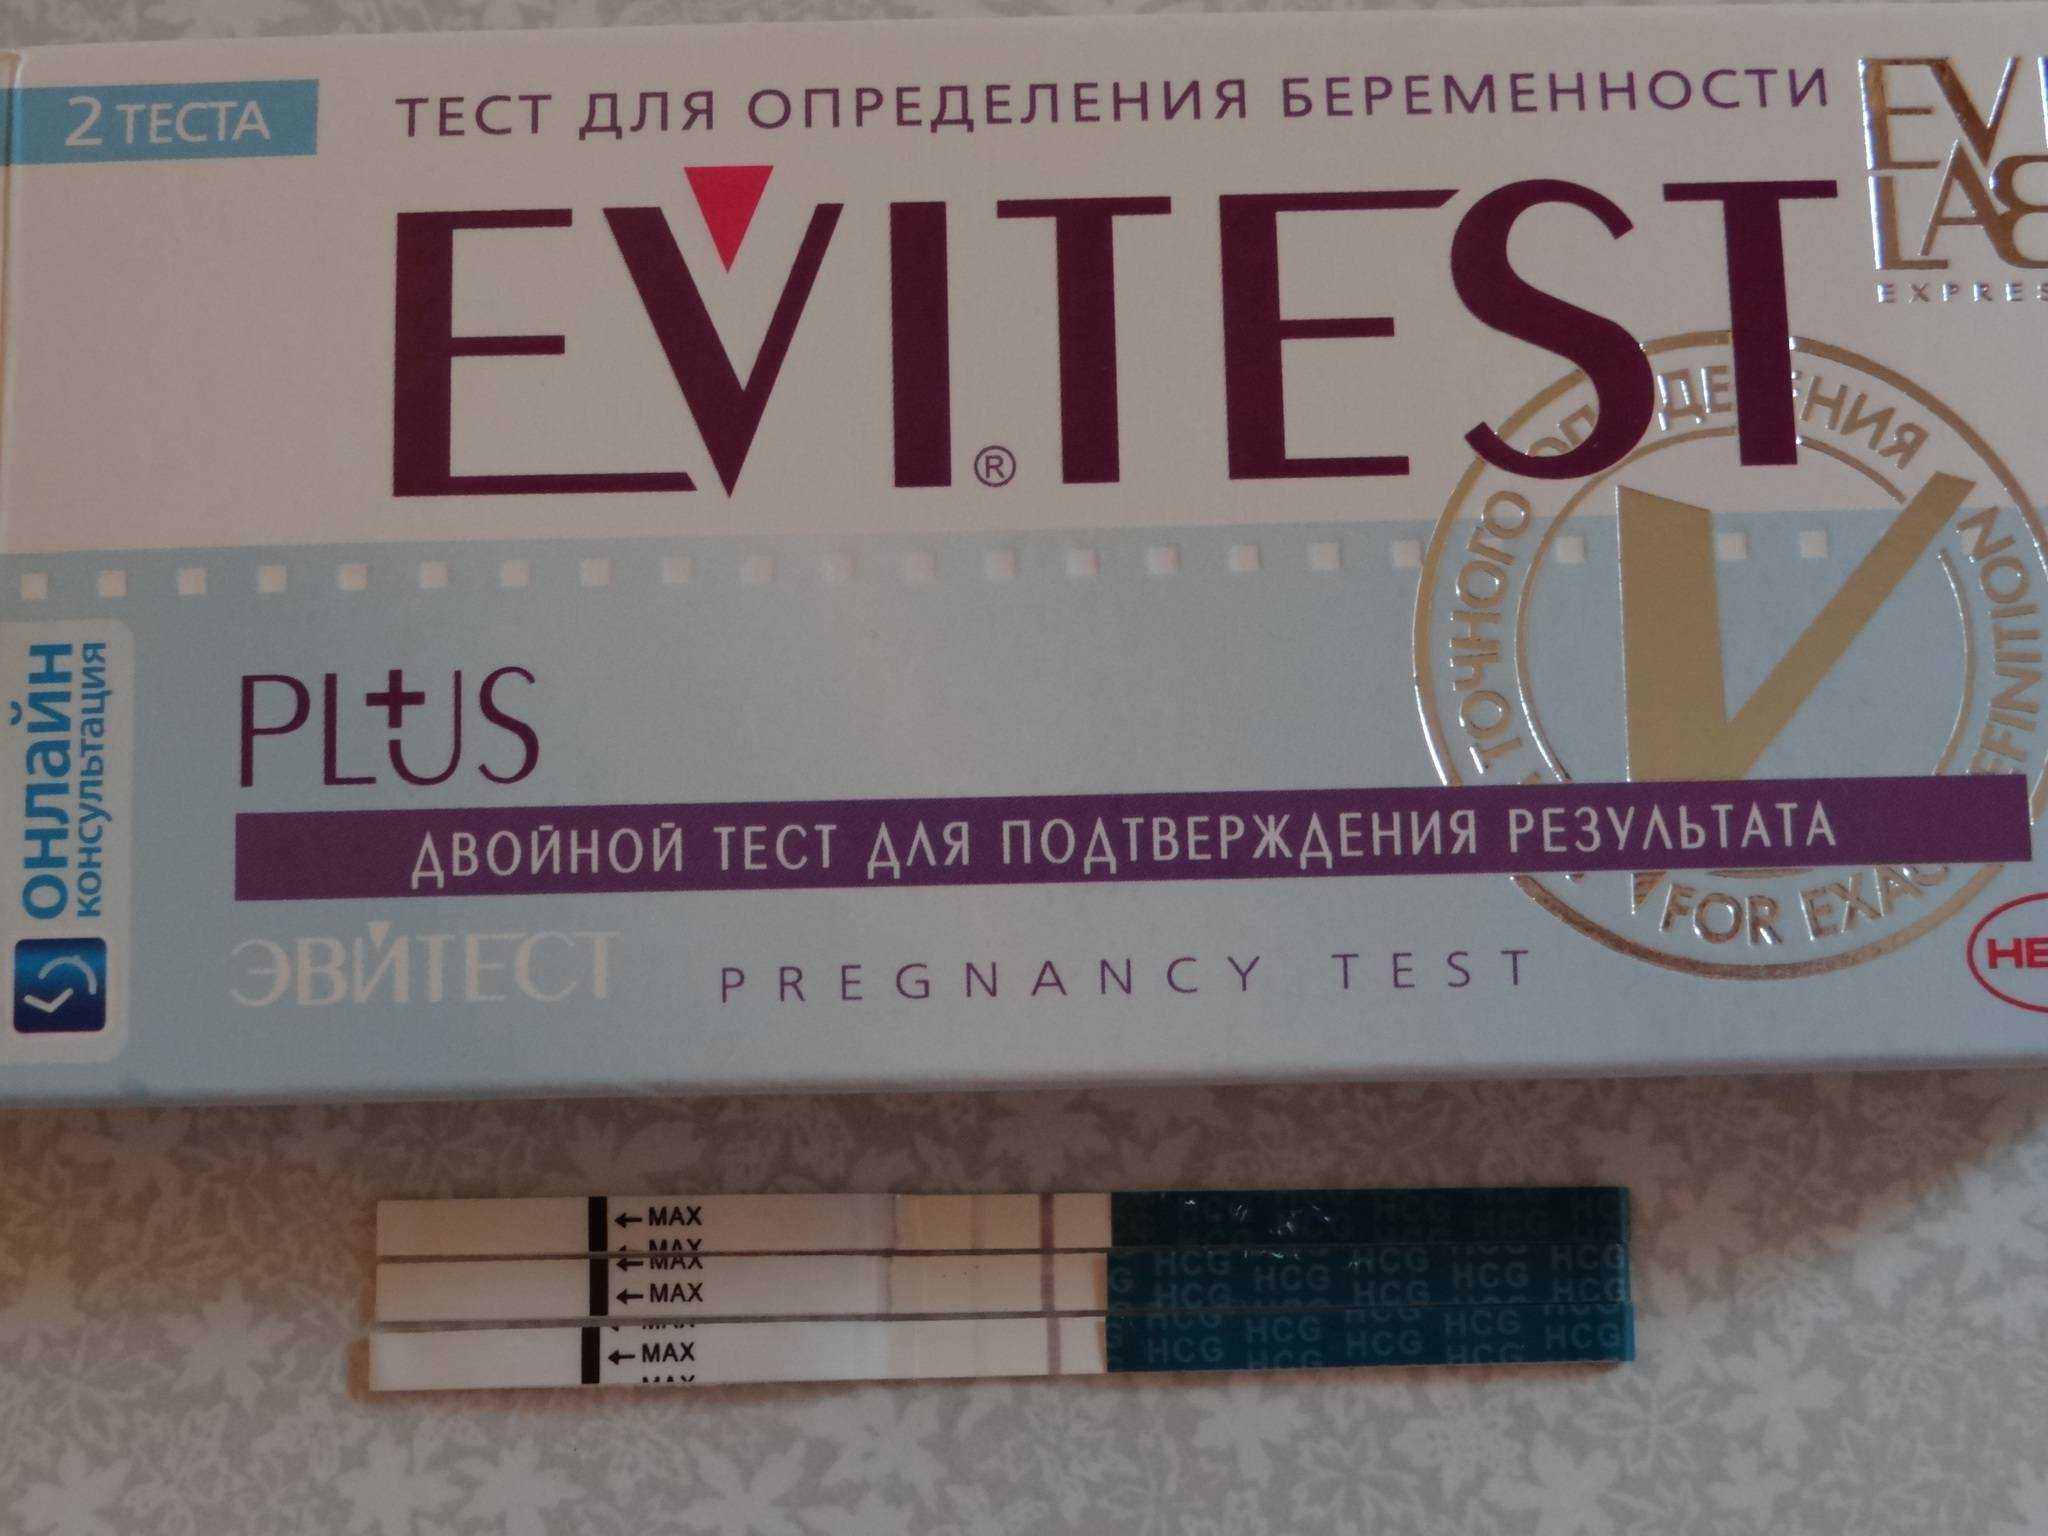 Тесты на беременность Frautest можно найти на полках российских аптек и супермаркетов уже давно Относительно недорогие устройства для ранней диагностики беременности просты и удобны в применении